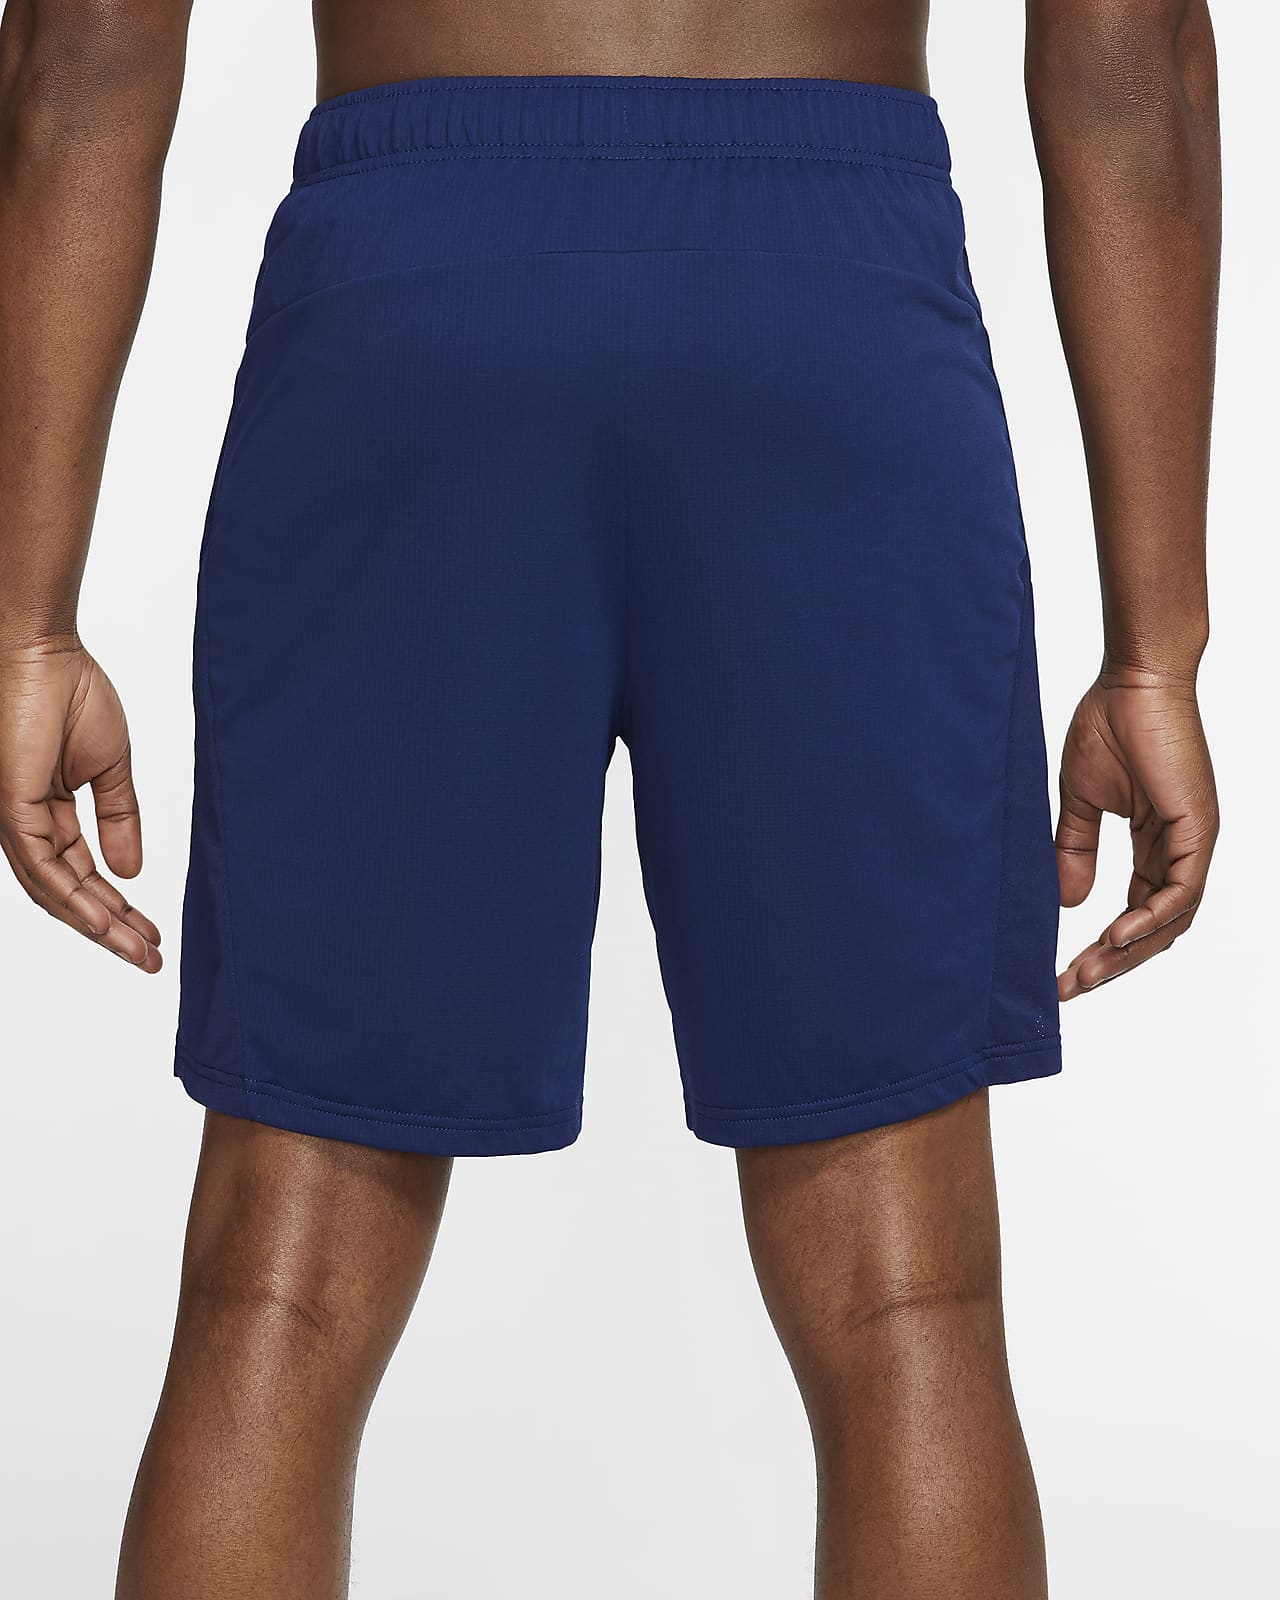 Nike Dri-FIT Men's Training Shorts 